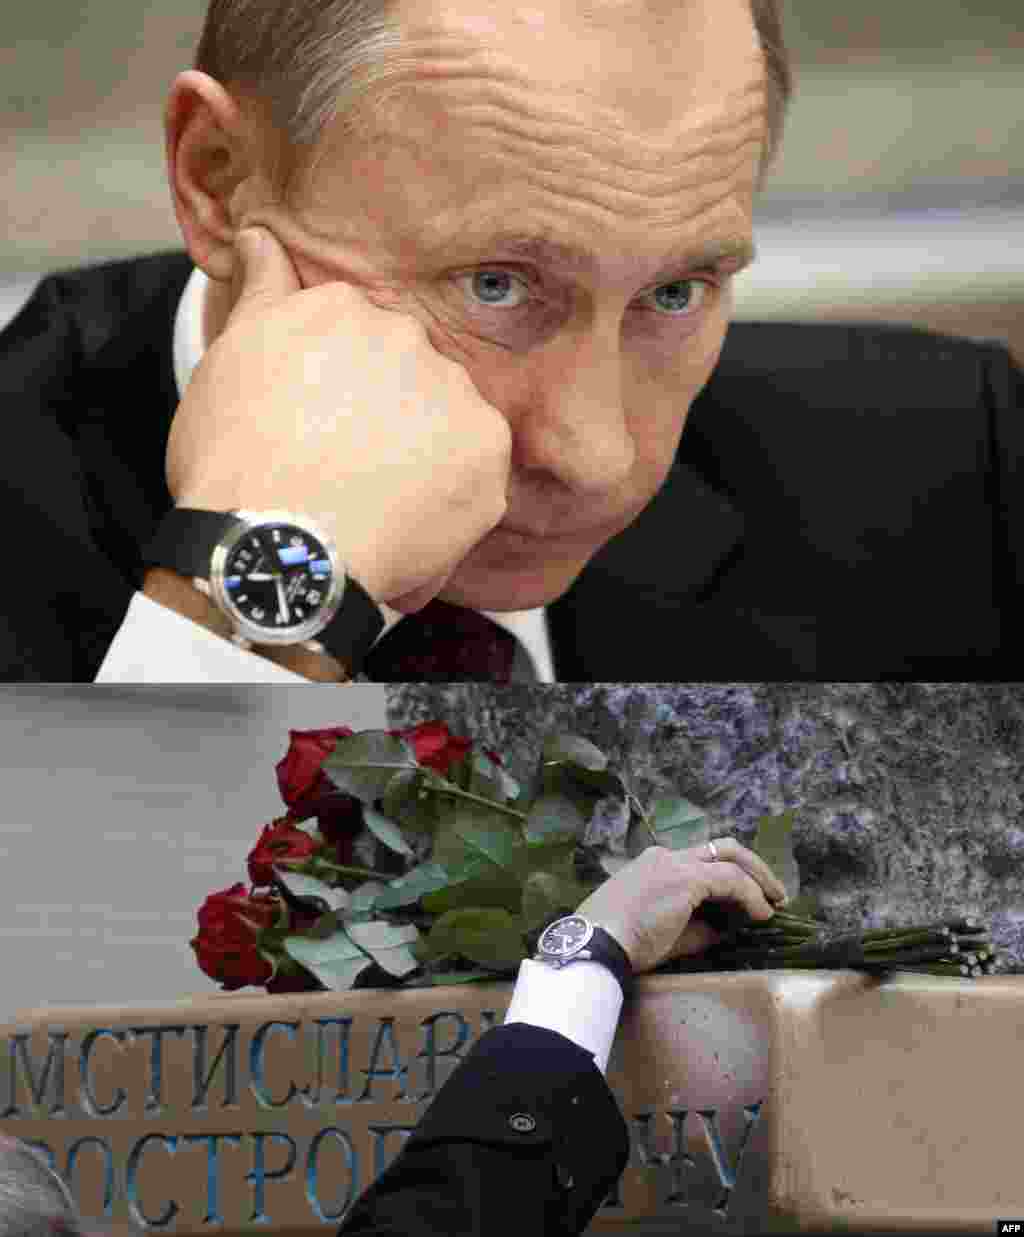 Элегантные часы Владимира Путина за $60 тыс. или 3 750 000 рублей (по сегодняшнему курсу доллара) Источник: новостной портал Газета.ru